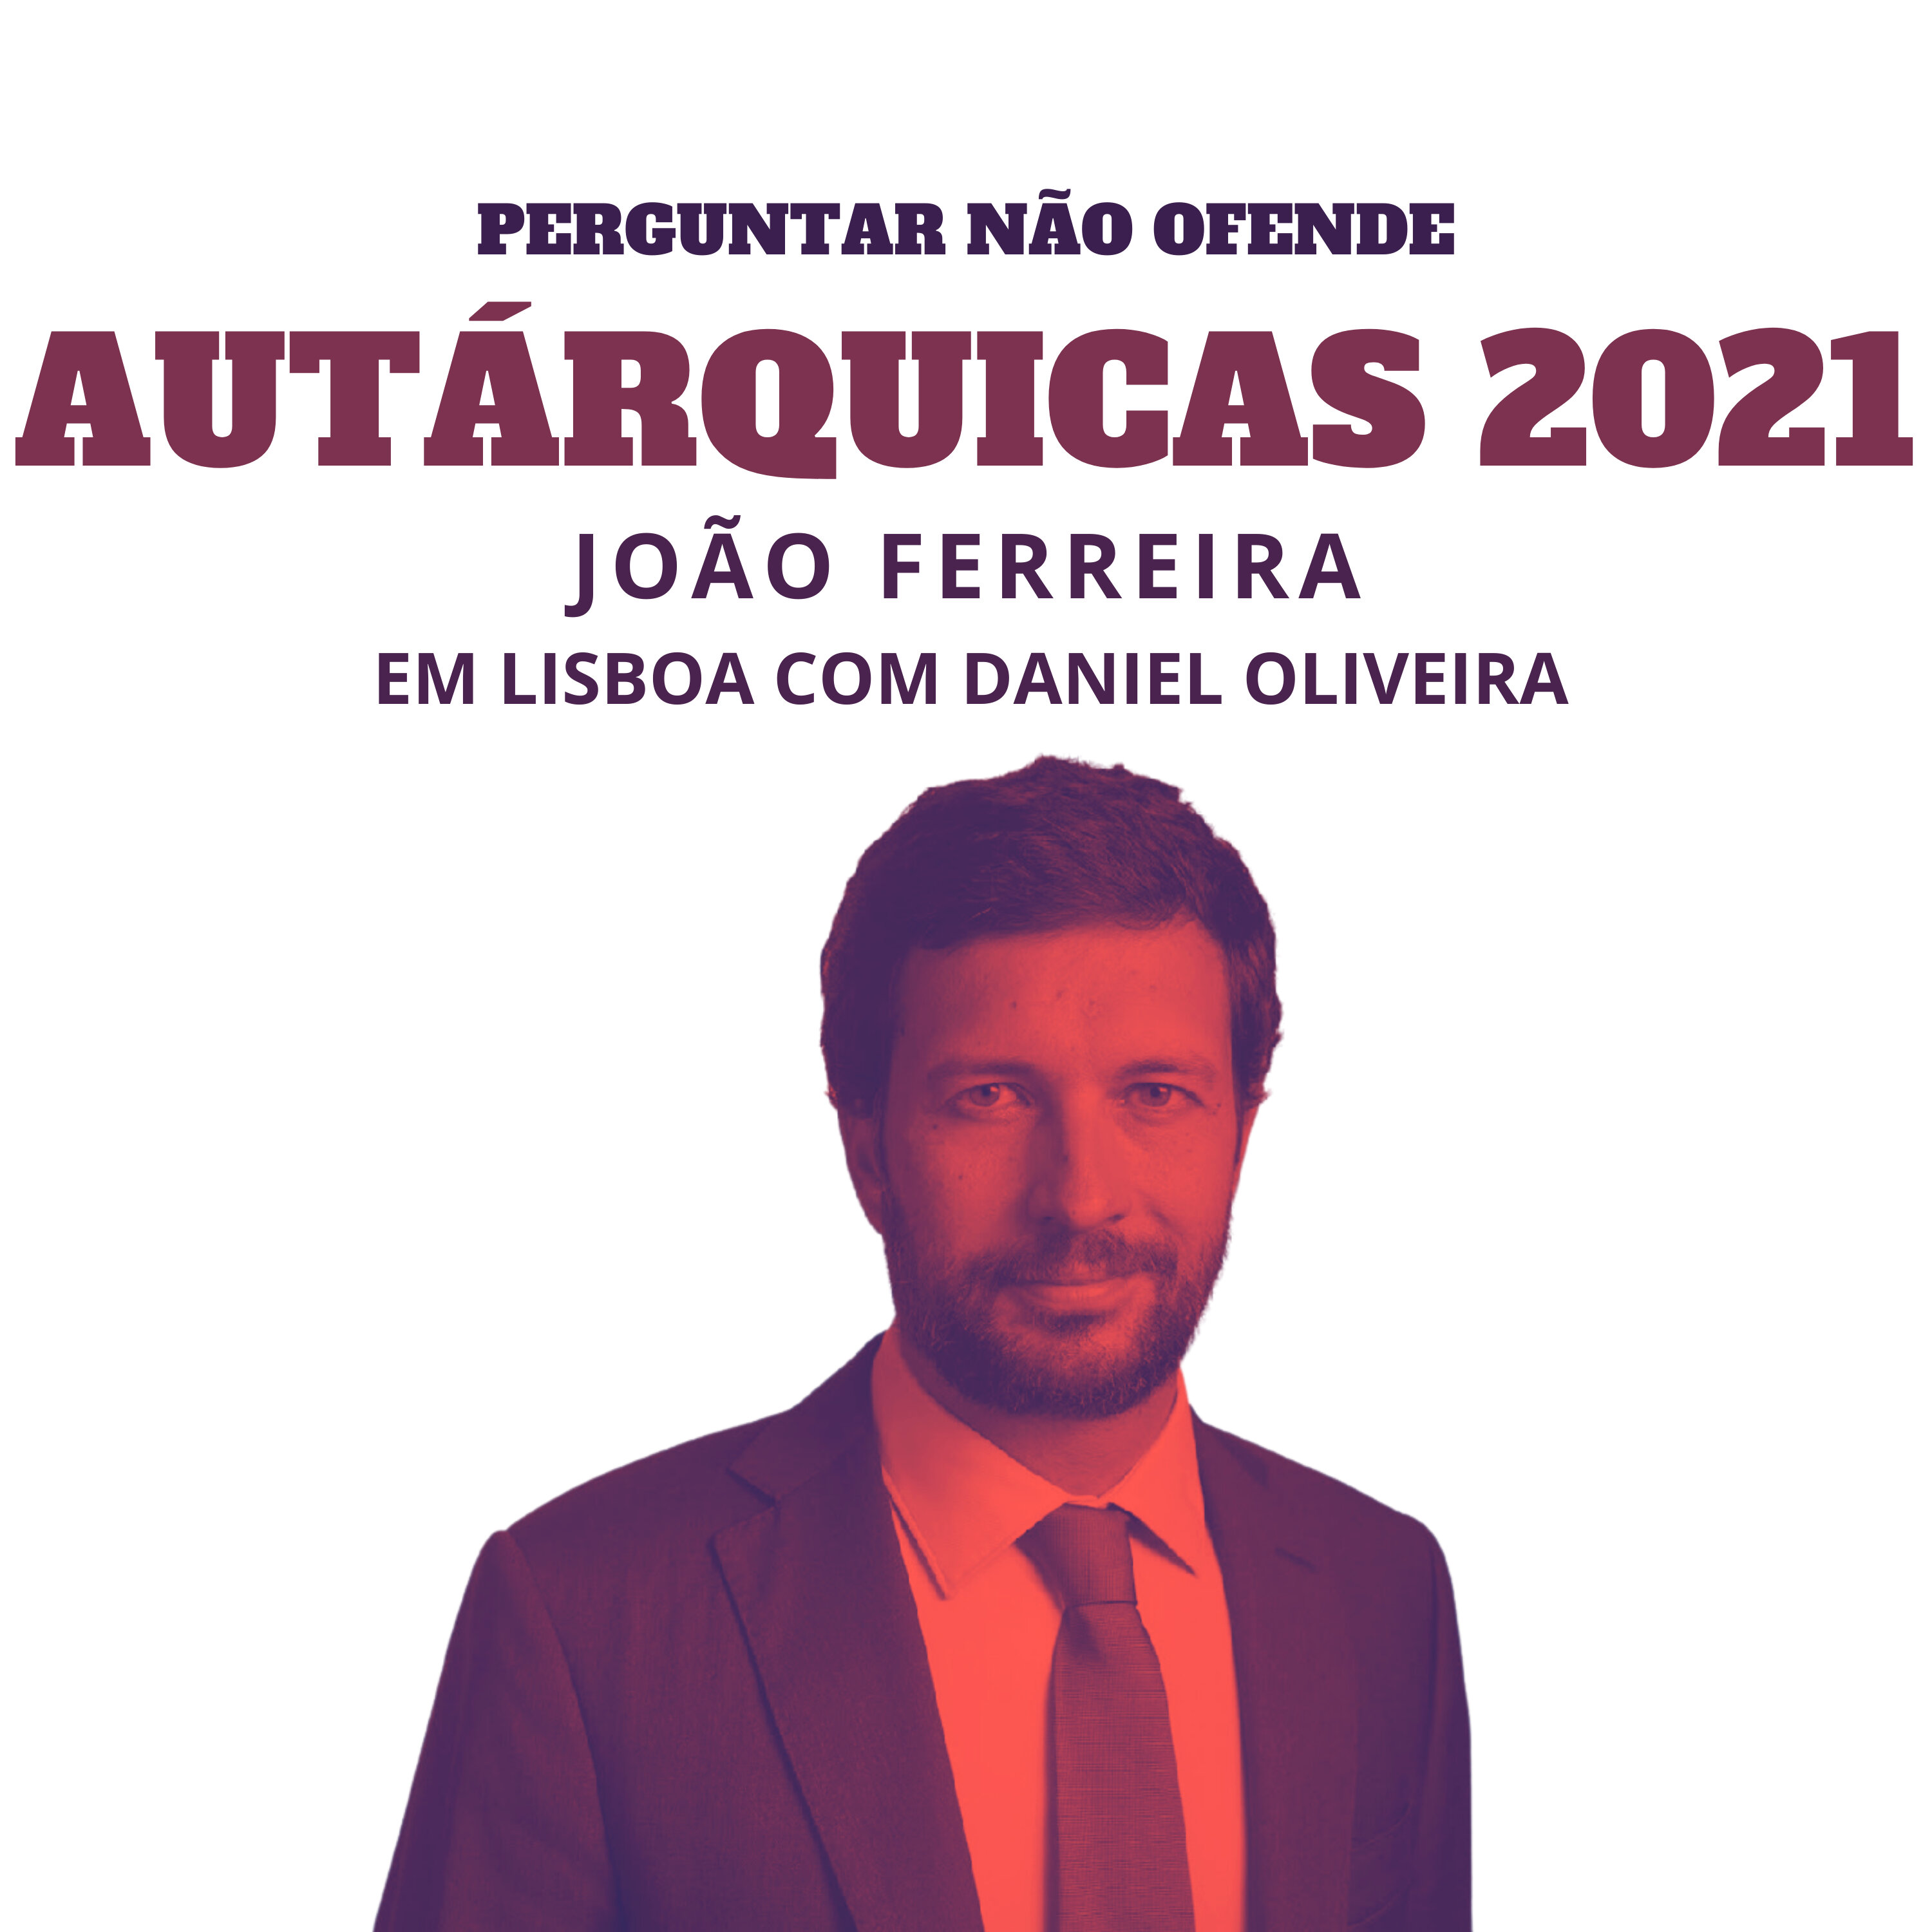 Autárquicas 2021: João Ferreira conversa com Daniel Oliveira, em Lisboa